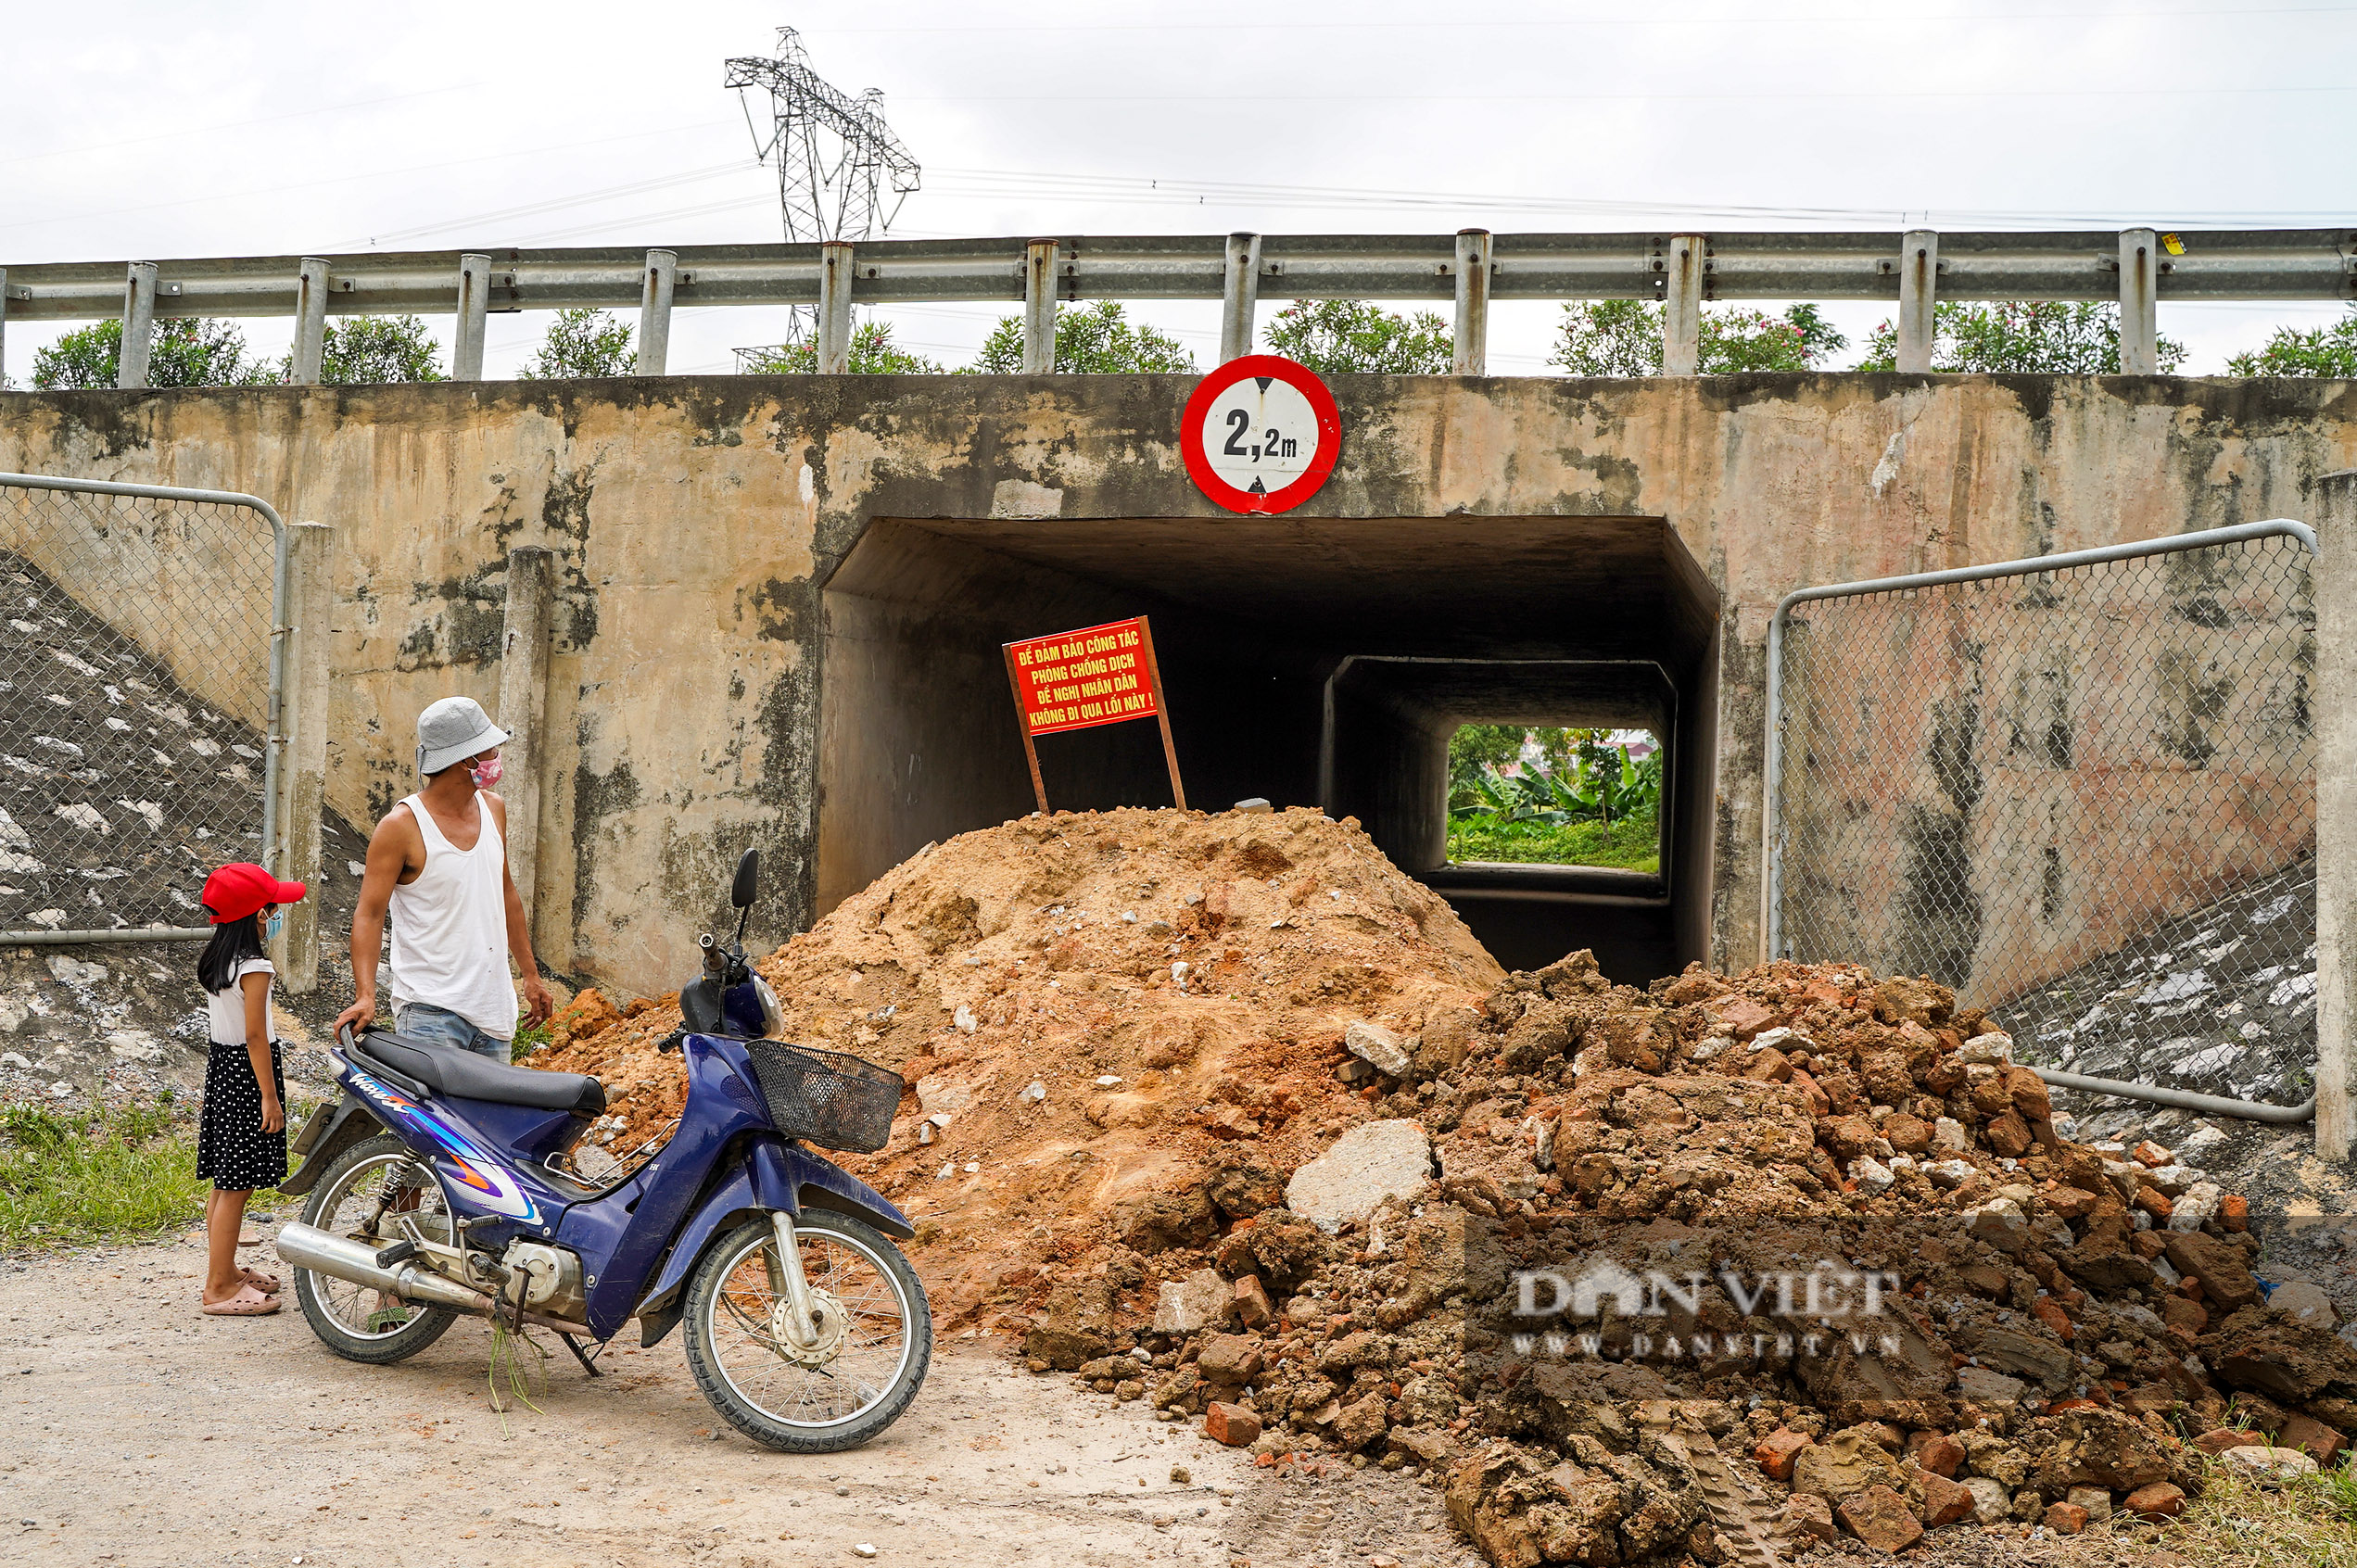 Hà Nội: Đổ đất, dựng rào phòng dịch tại các nơi tiếp giáp Bắc Giang, Bắc Ninh - Ảnh 9.